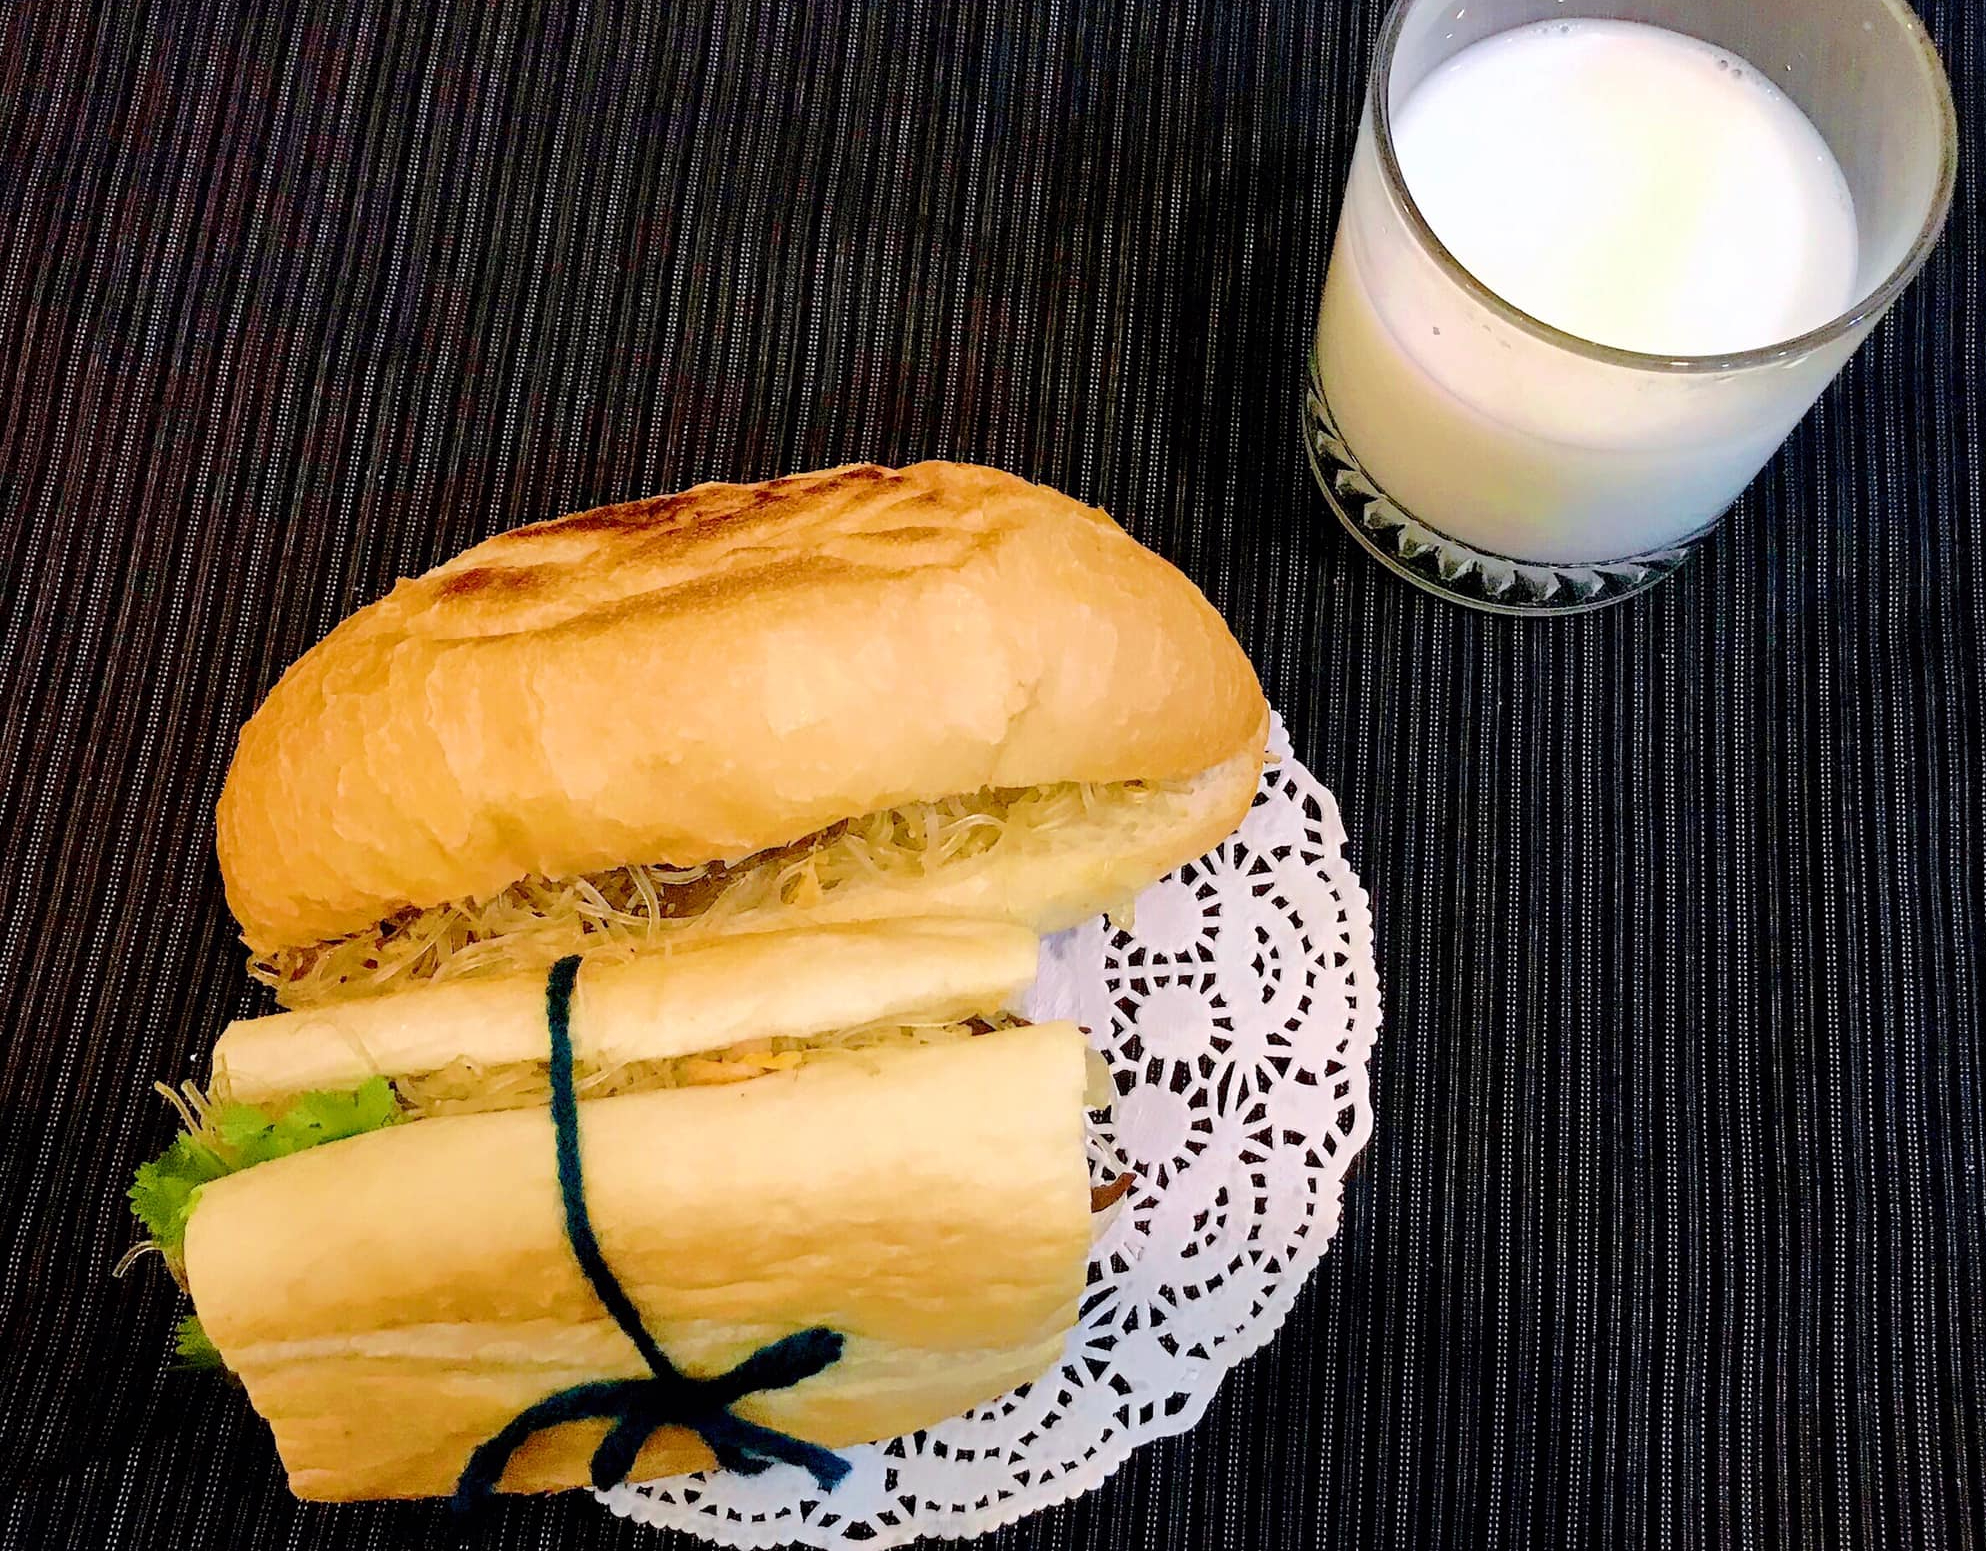 Độc lạ món bánh mì miến ngon khó cưỡng ngày lạnh - Ảnh 3.